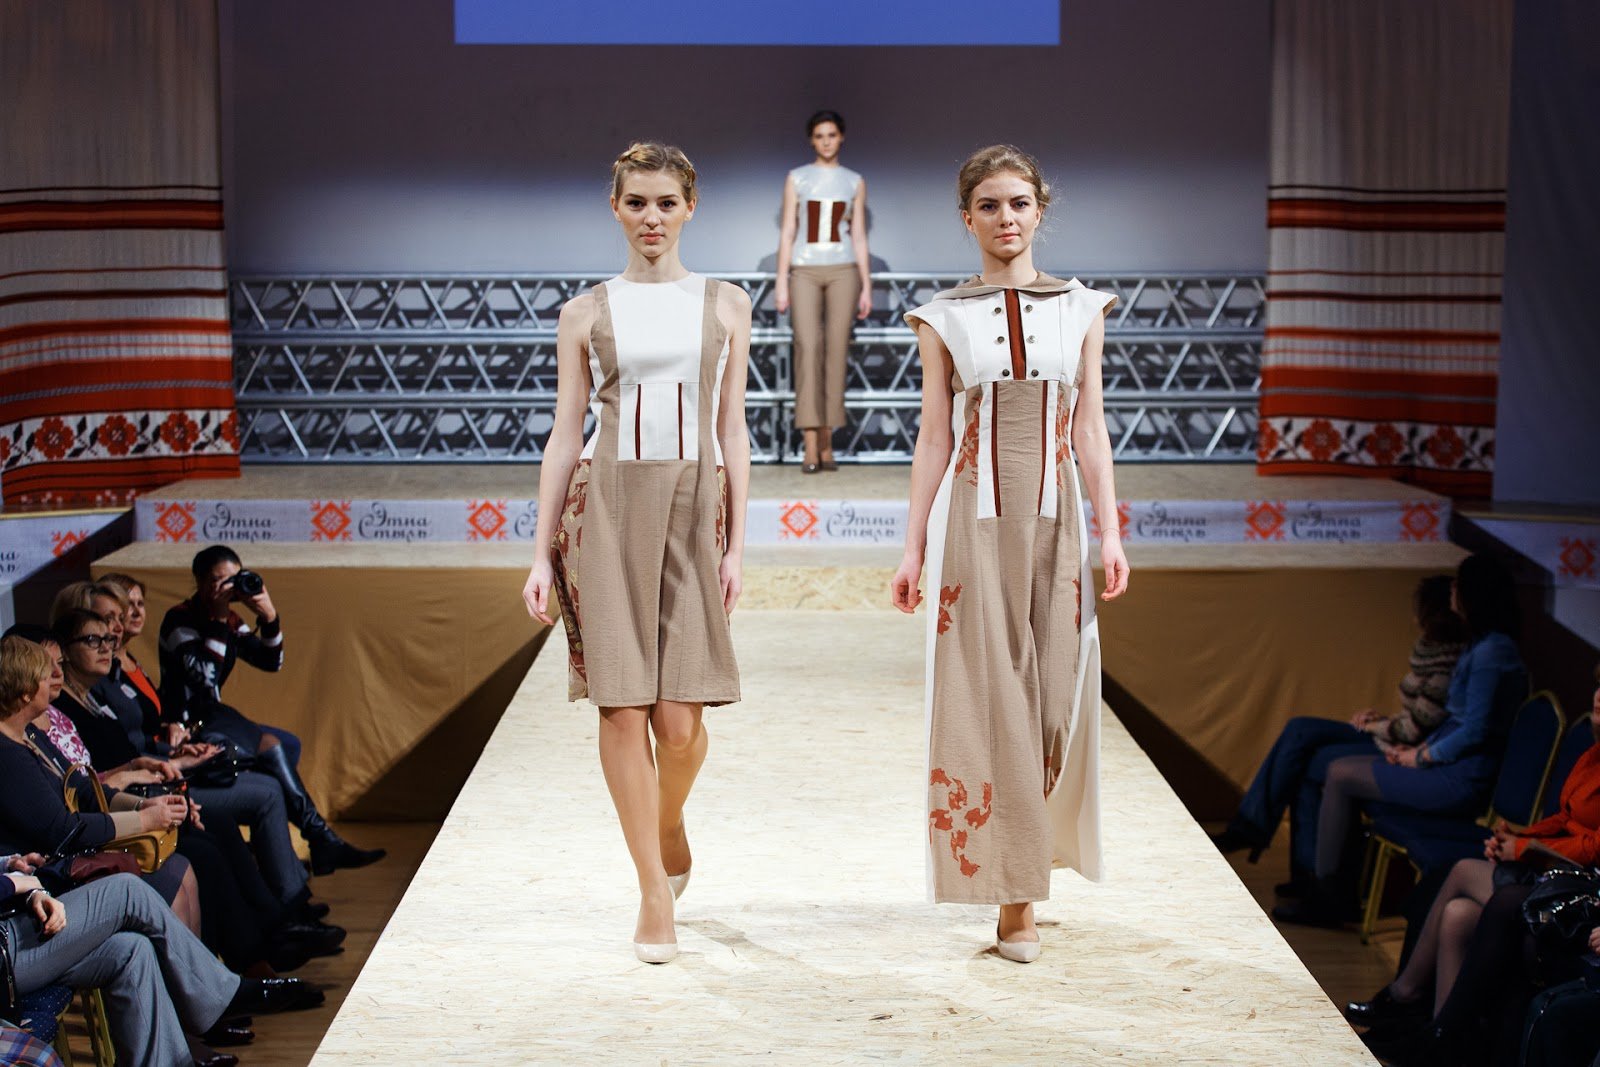 Сайты Модной Белорусской Одежды